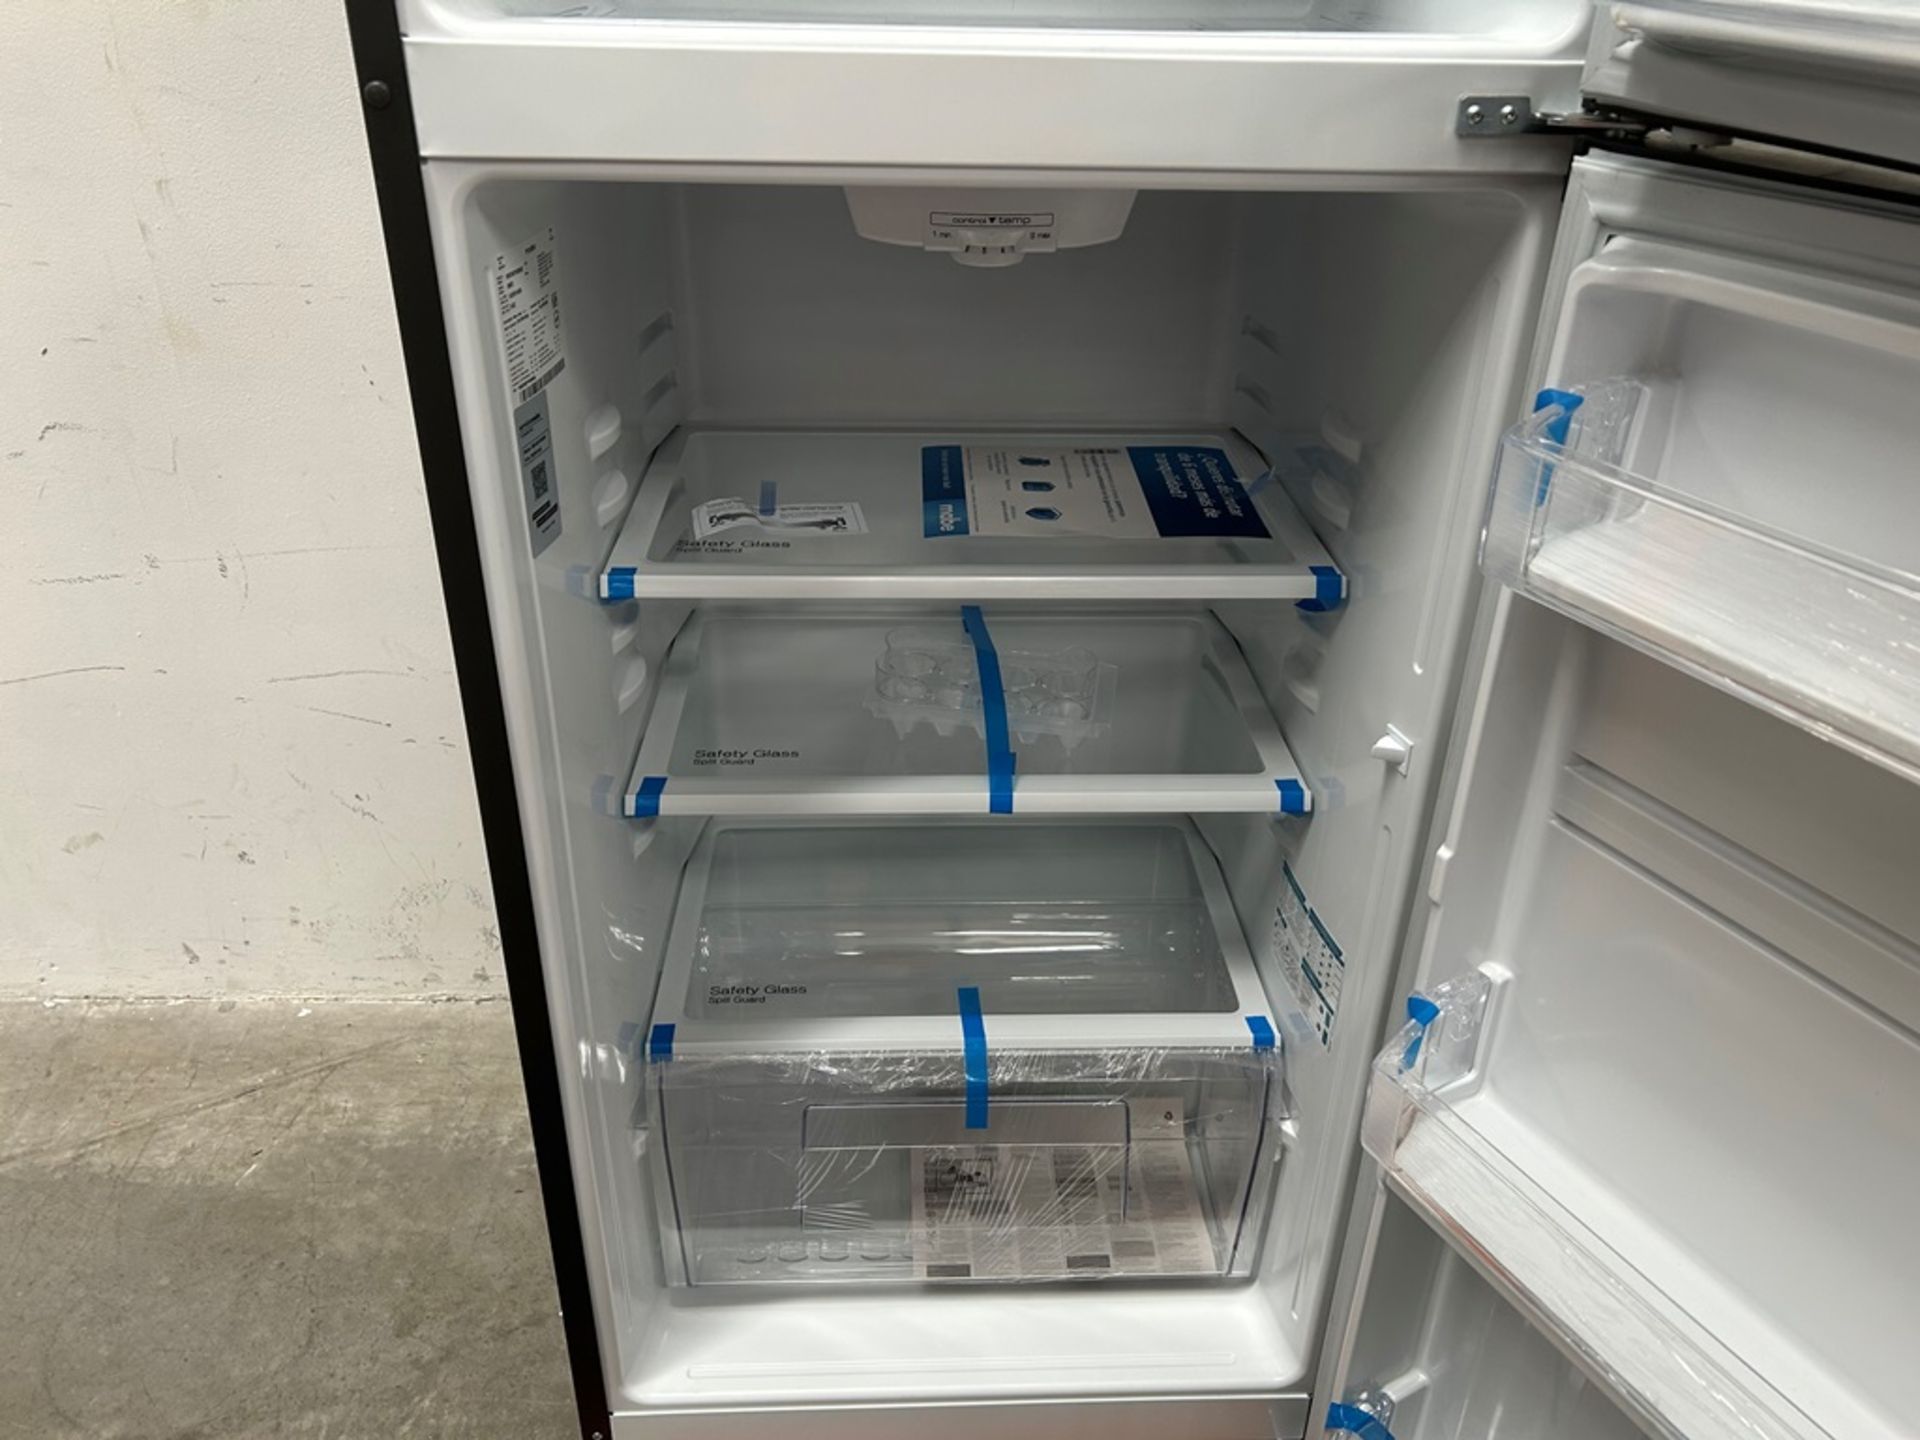 Lote de 2 refrigeradores contiene: 1 refrigerador Marca MABE, Modelo RME360FVMRMA, Serie 816455, Co - Image 14 of 18